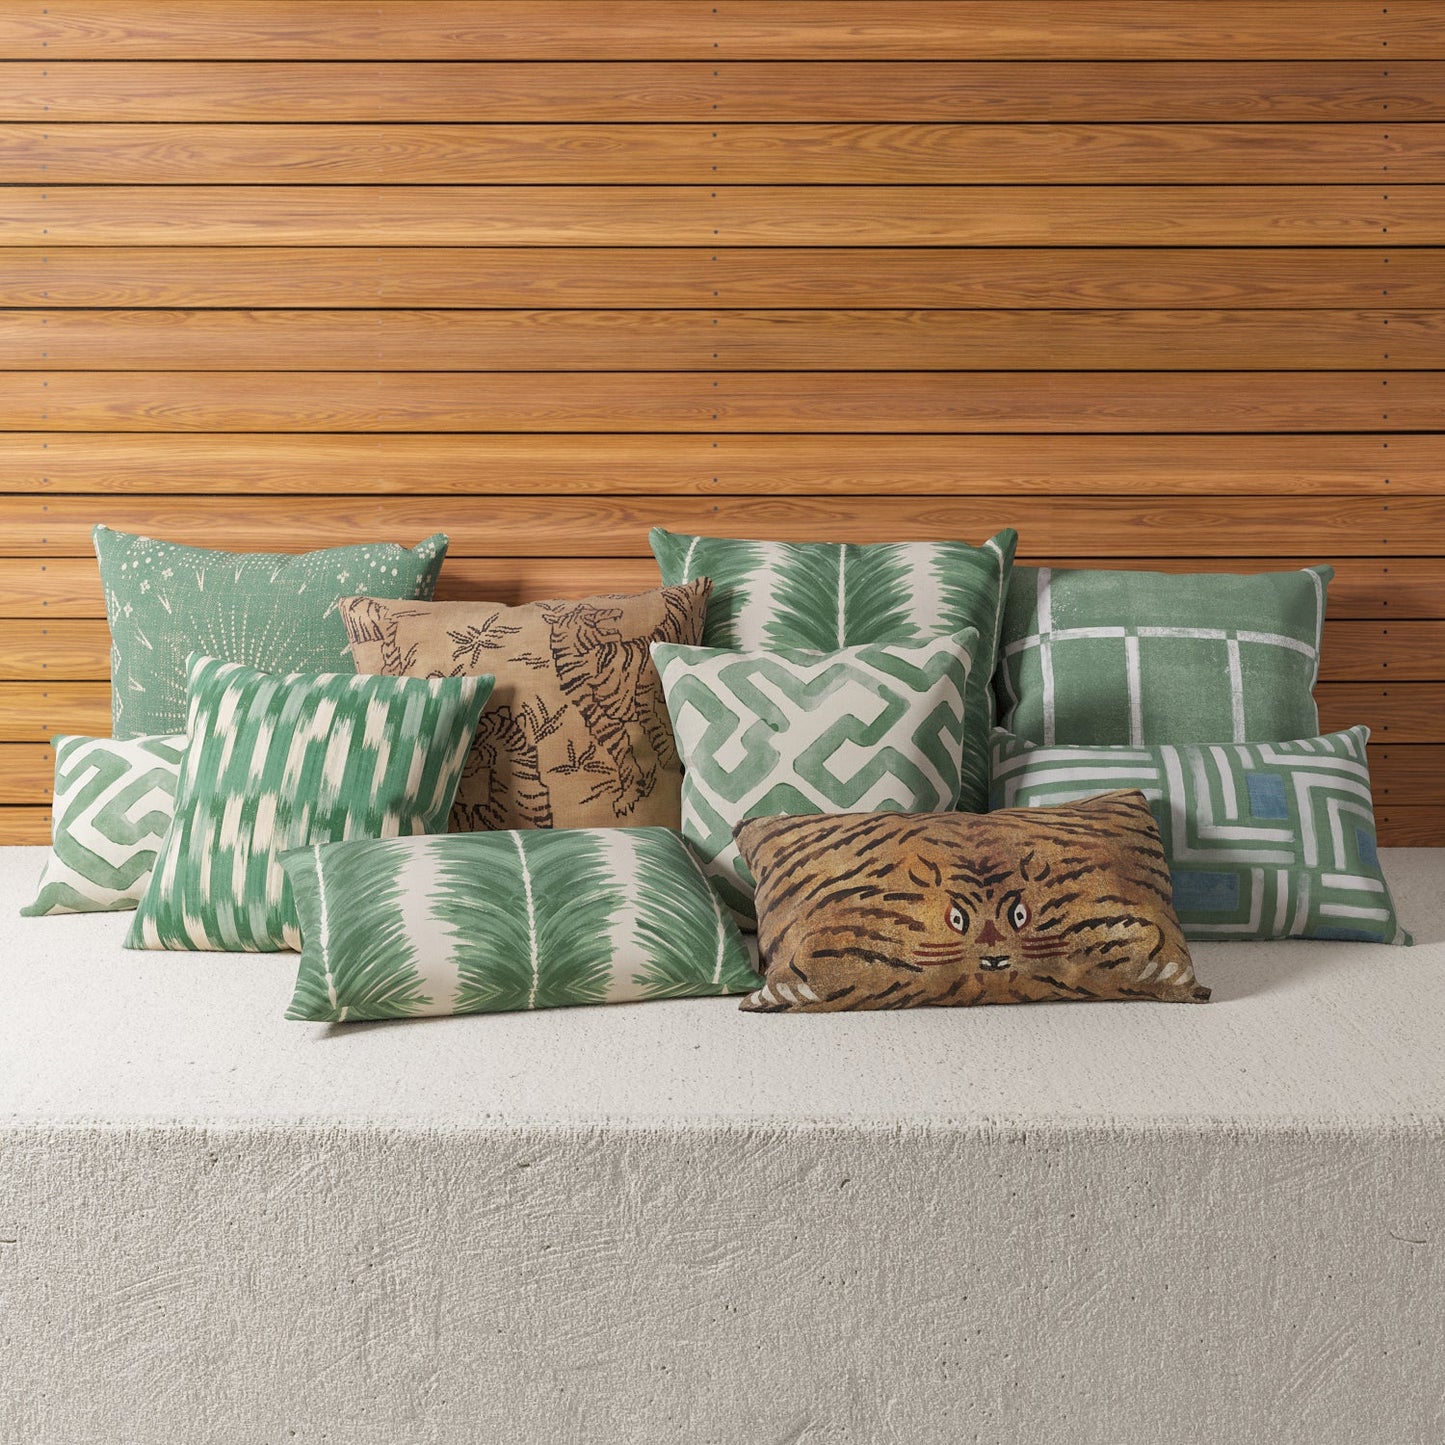 Indoor / Outdoor Pillow - Green Mondrian Inspired Art